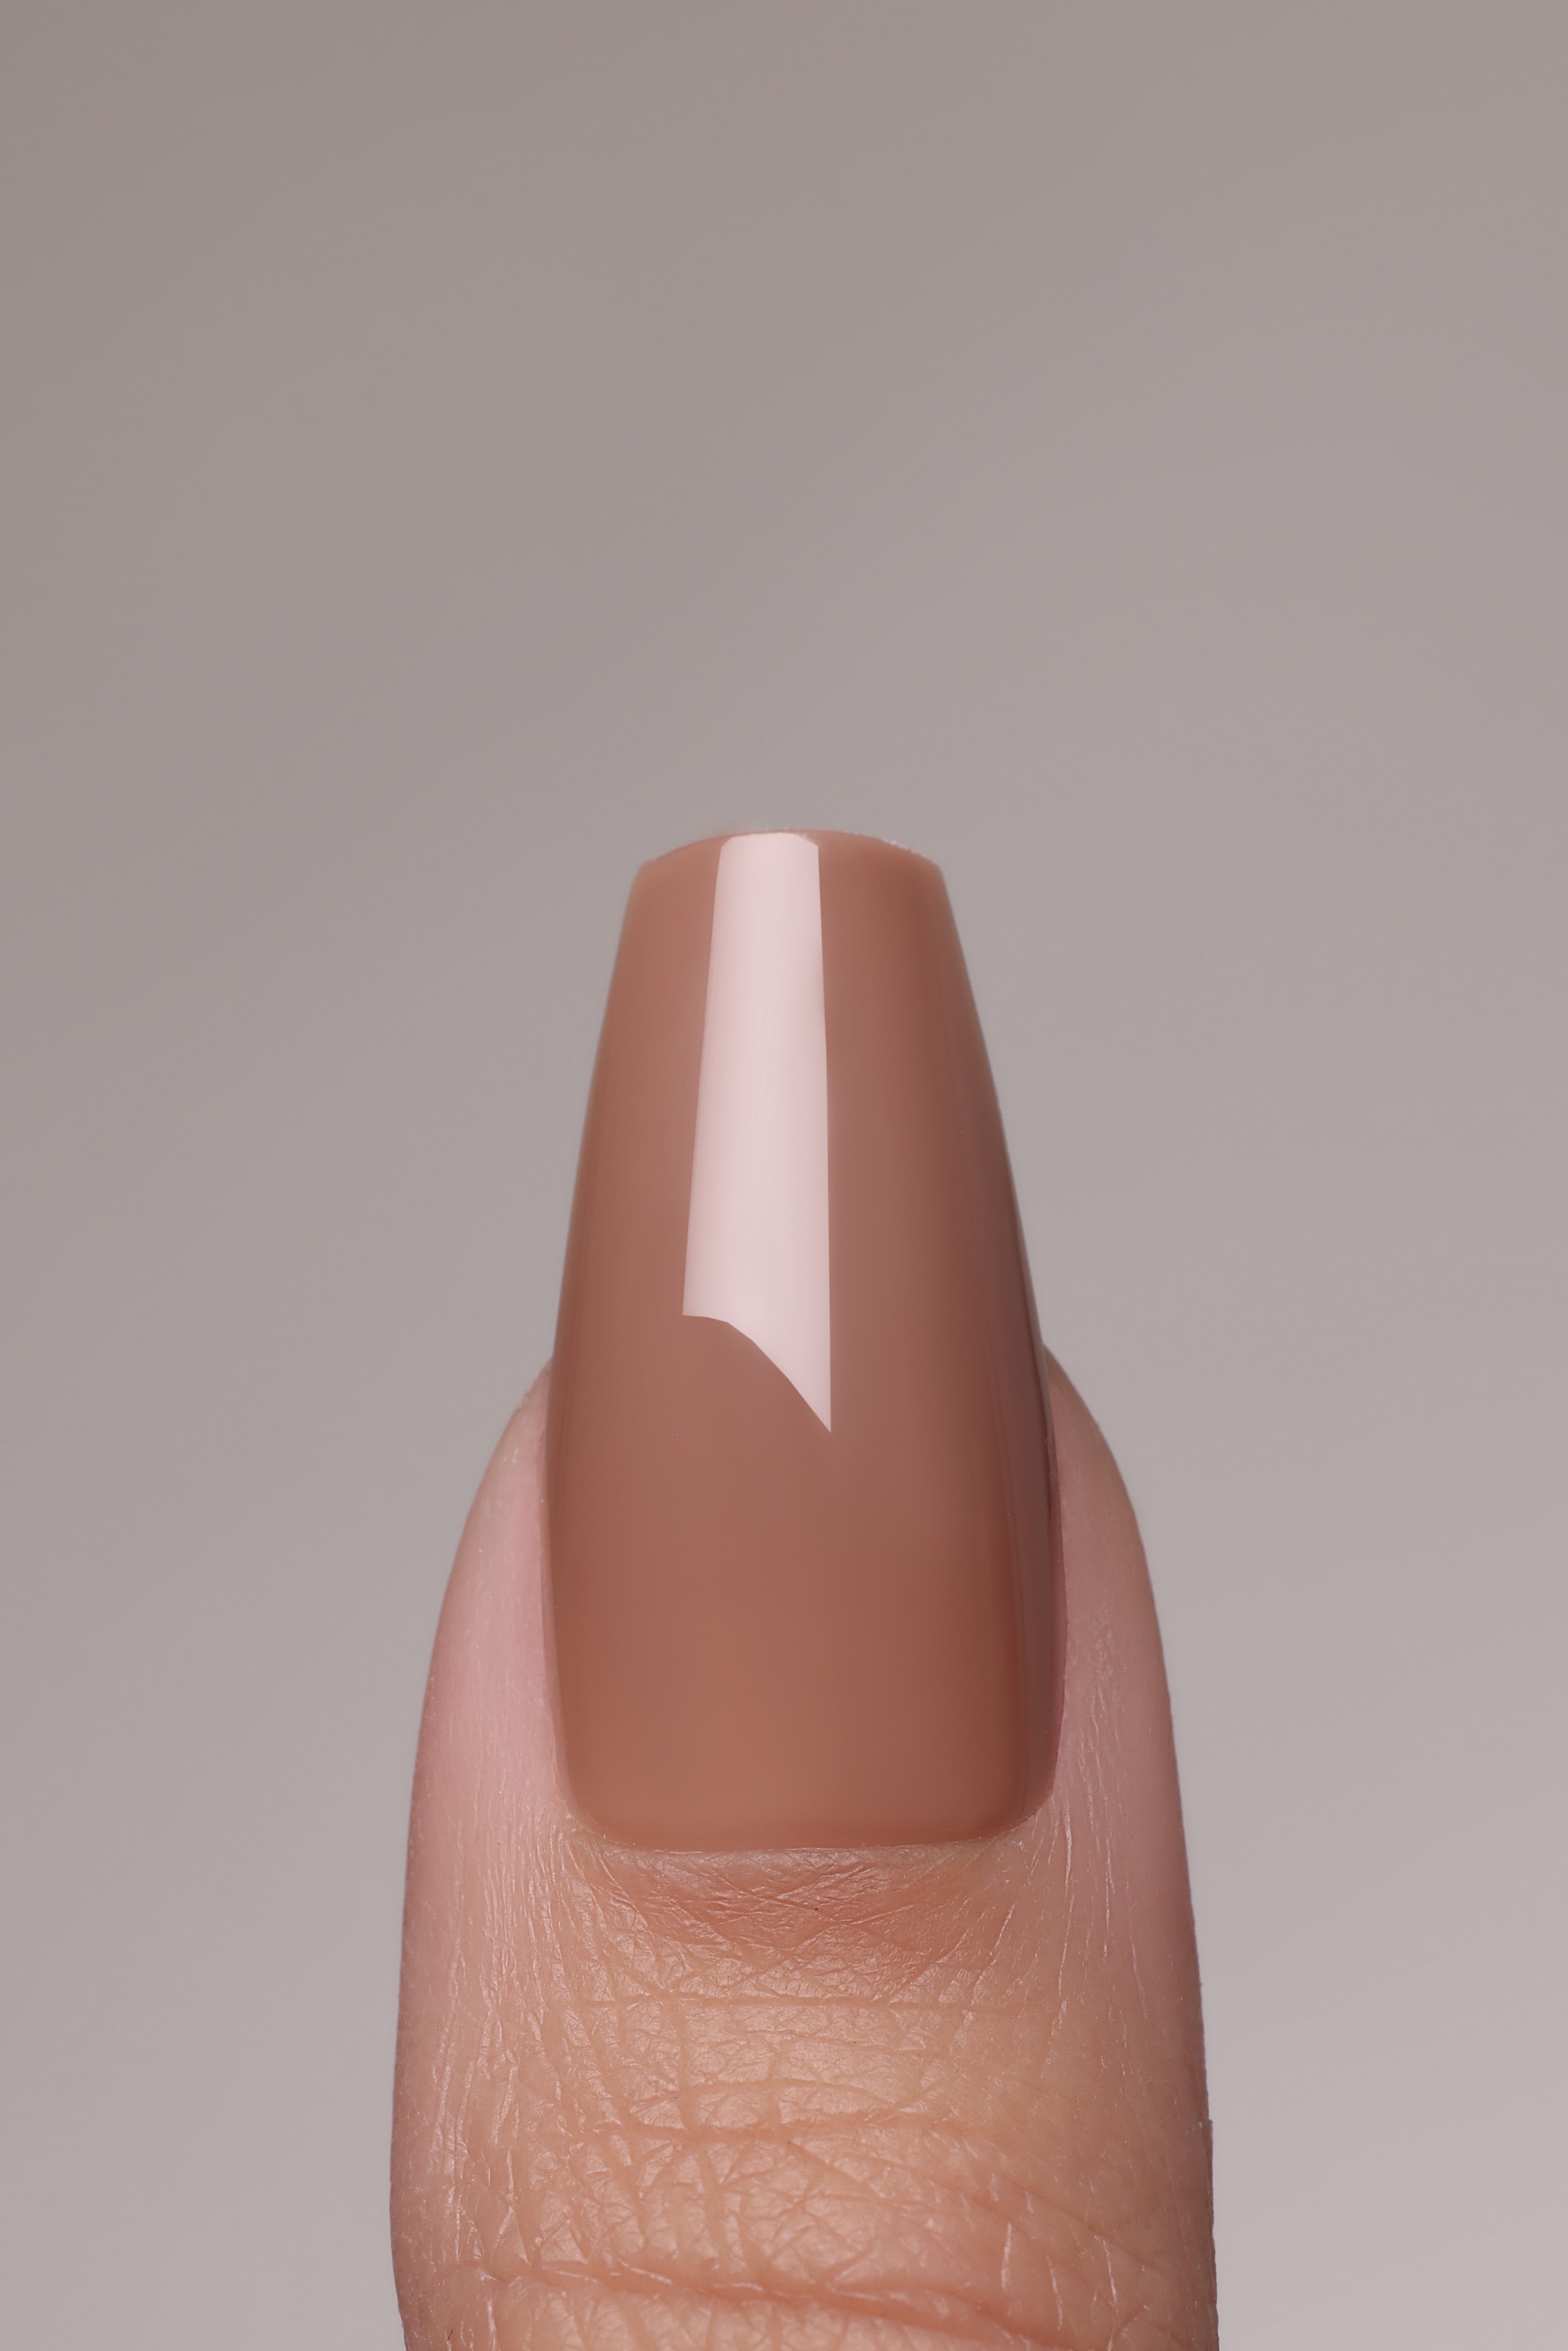 CARLI Acrylish (extra long) Press on Nails